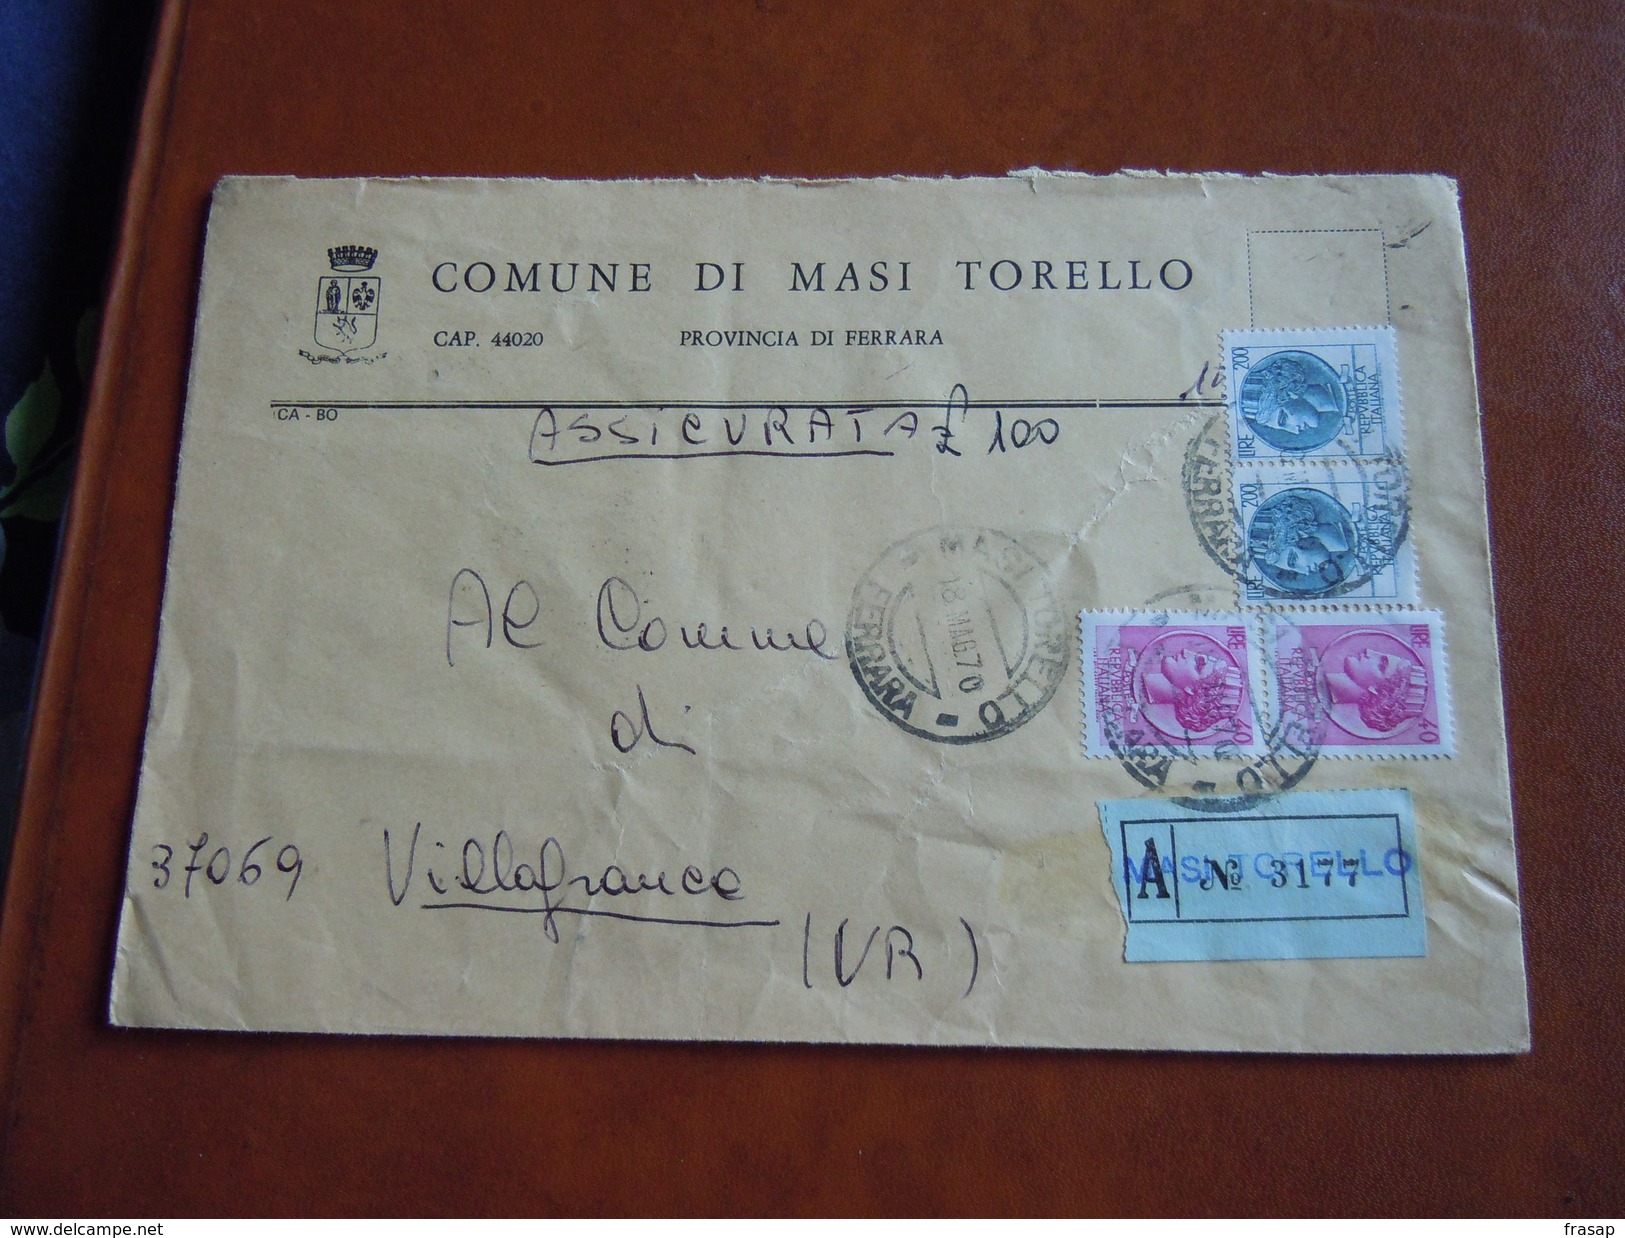 TEMATICA BUSTE COMUNALI - COMUNE DI M ASI TORELLO 1969 - Buste